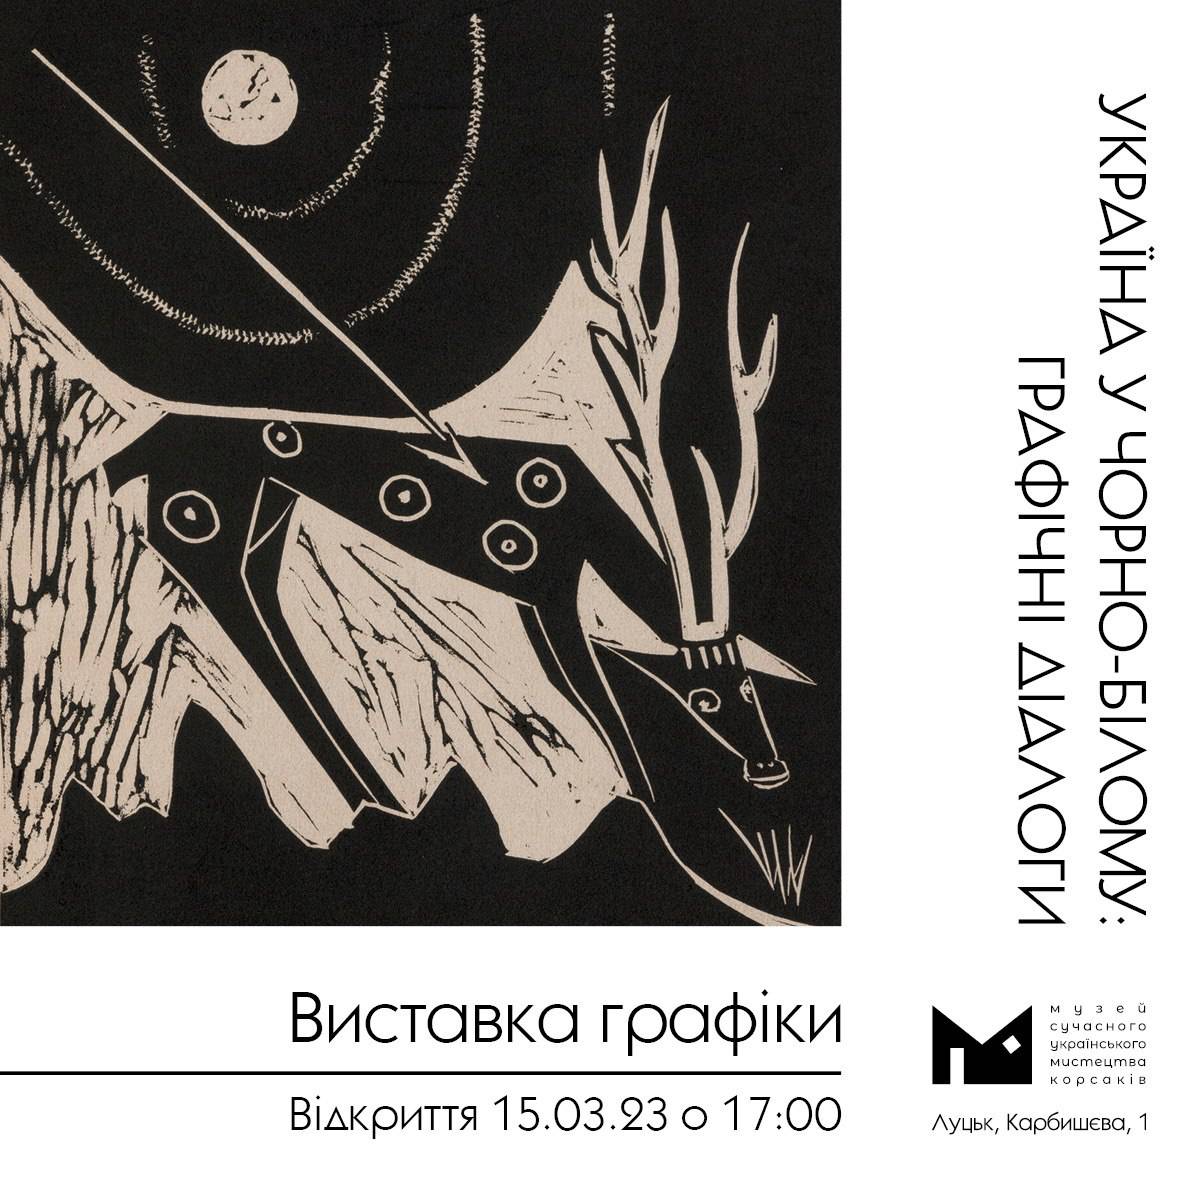 (Українська) 5 березня о 17:00 в Музеї Корсаків відбудеться відкриття виставки графіки «УКРАЇНА У ЧОРНО-БІЛОМУ: ГРАФІЧНІ ДІАЛОГИ»!